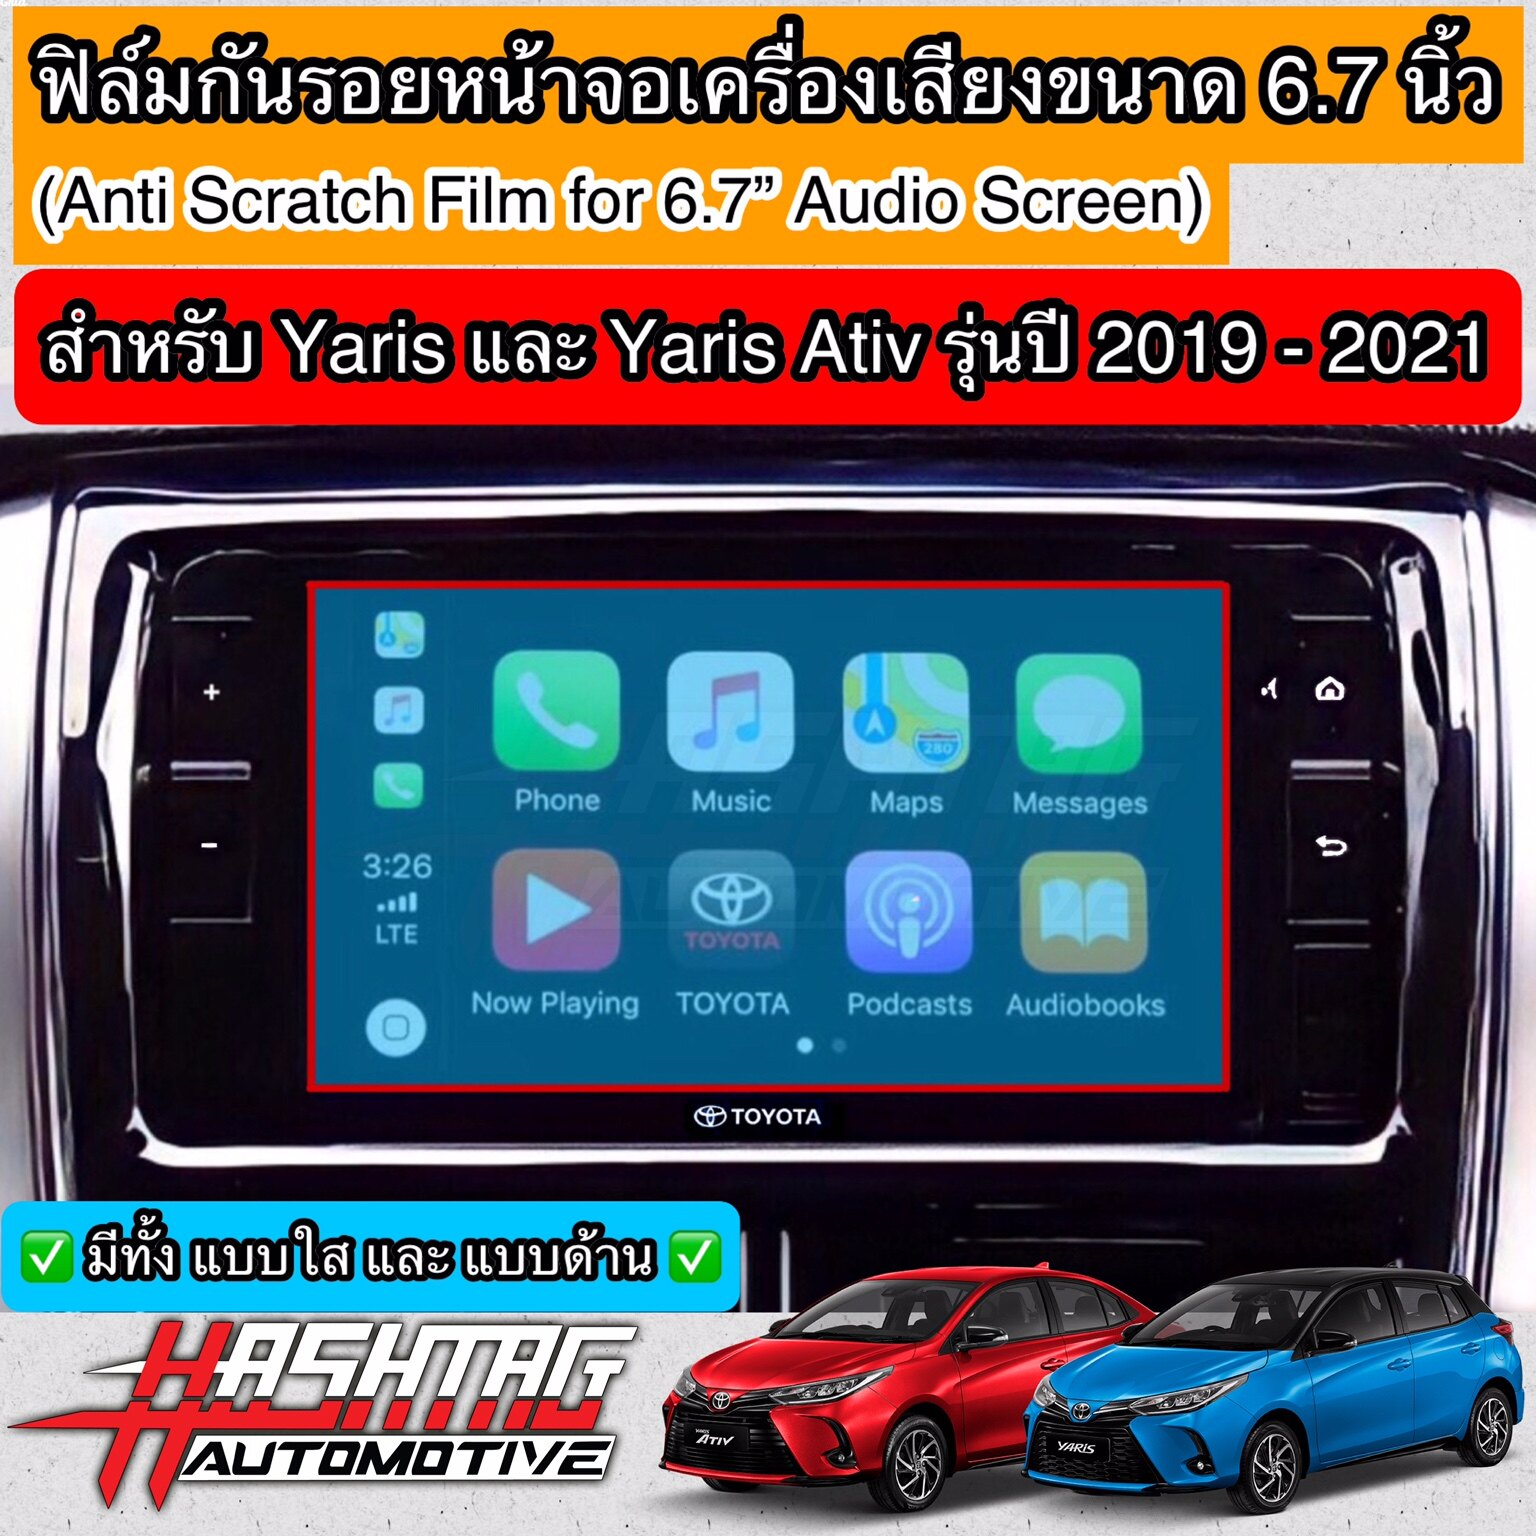 ฟิล์มกันรอยหน้าจอเครื่องเสียงรถยนต์ ผลิตตรงรุ่น TOYOTA YARIS & YARIS ATIV รุ่นปี 2019-2021 [Anti Scratch Film Audio Screen] ช่วยปกป้องหน้าจอรถจากรอยขีดข่วน